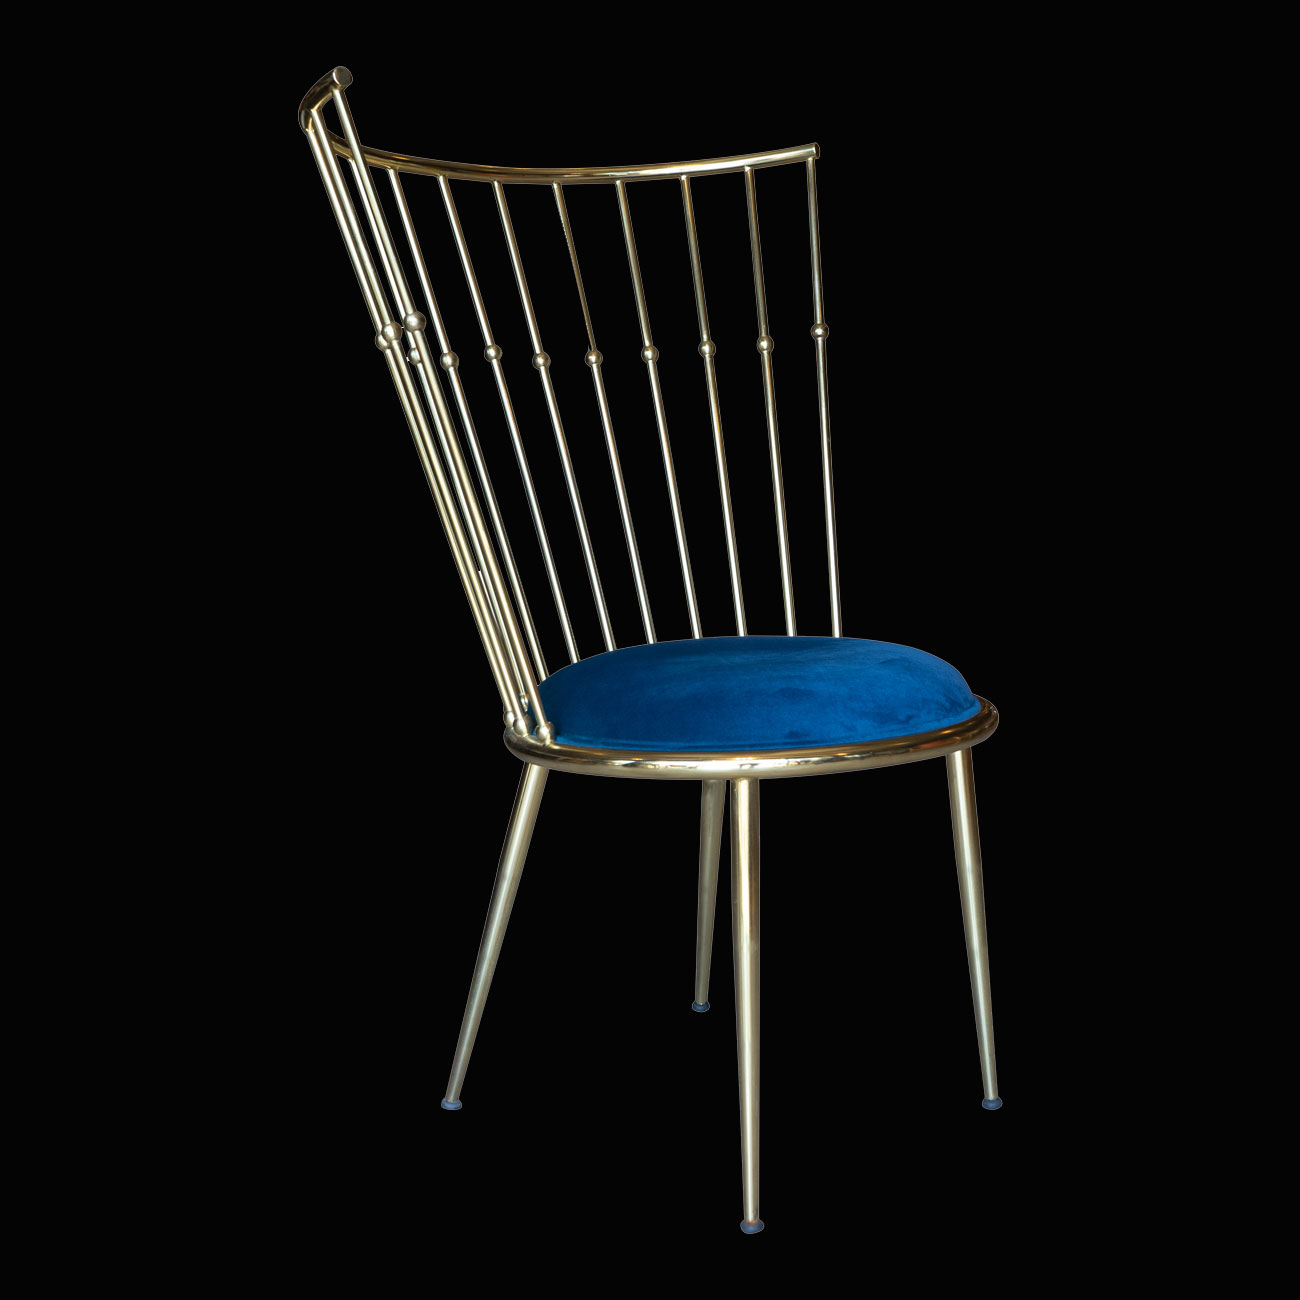 metal sandalye modelleri, lüks sandalye modelleri, modern sandalye modelleri